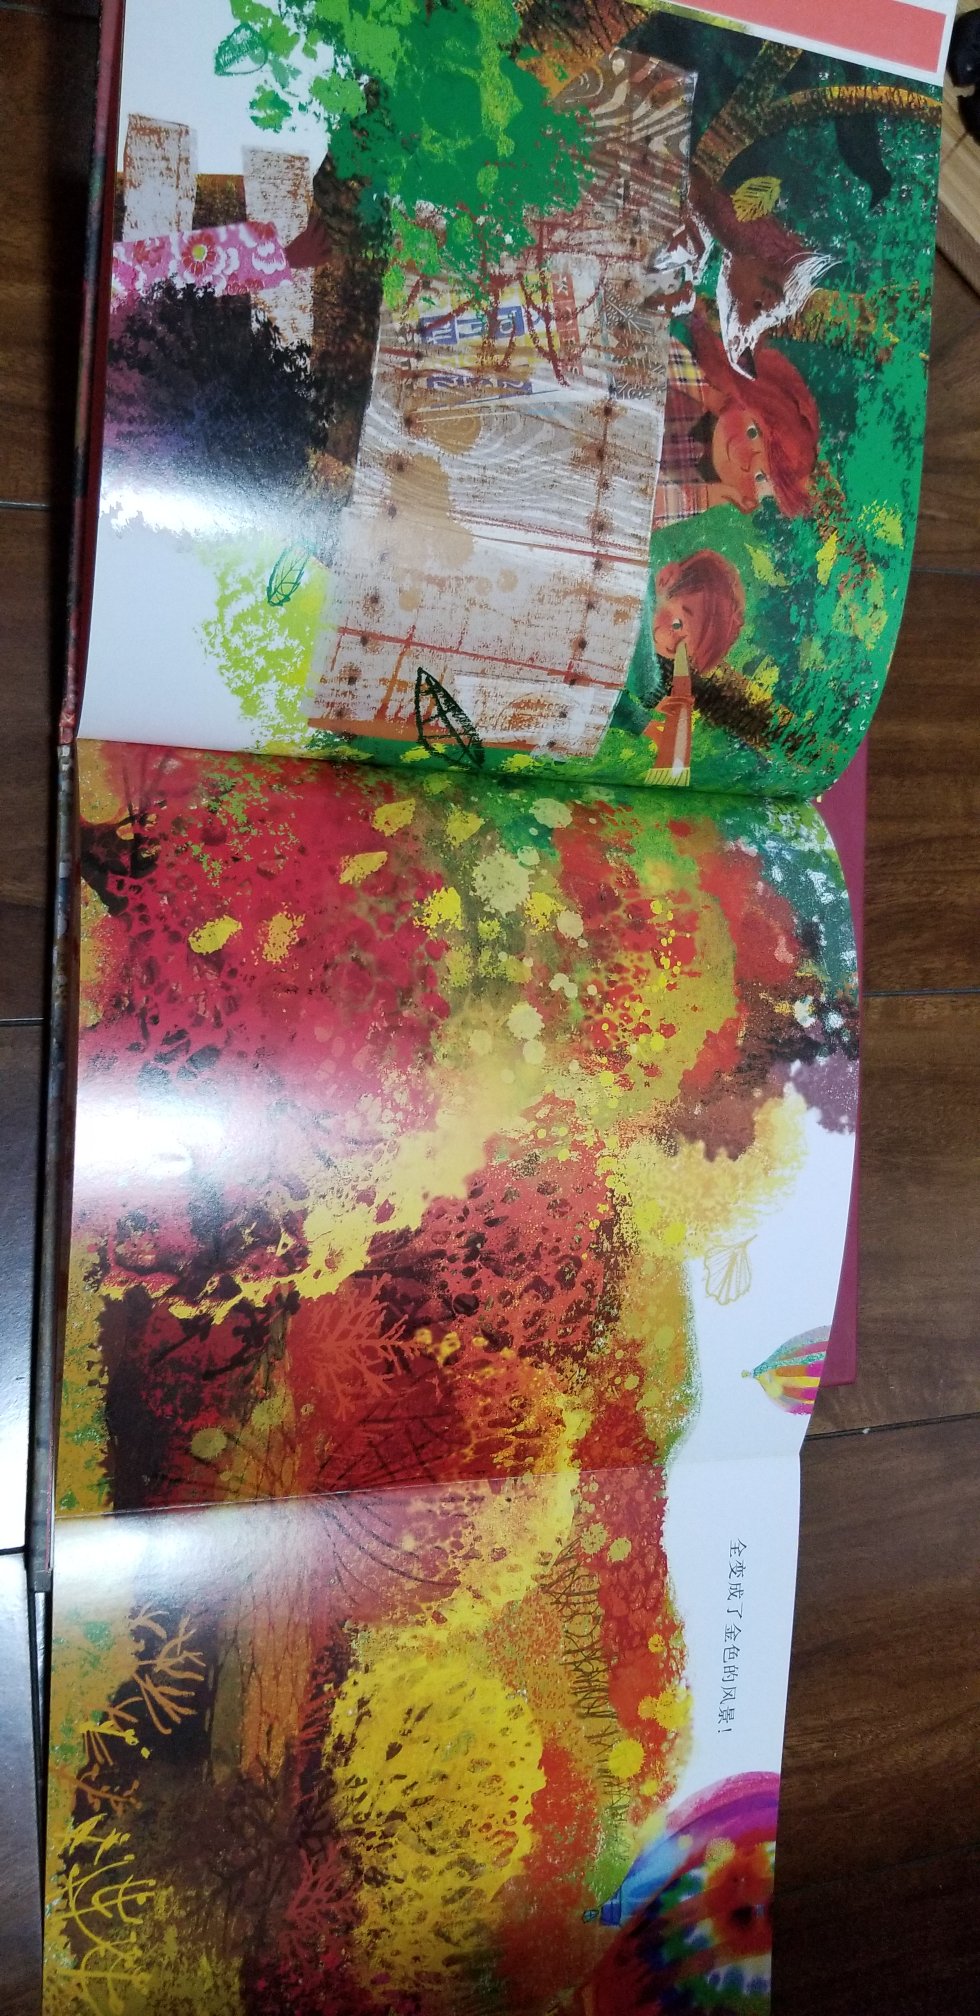 一本有关秋天景象的书，文字少，图画色彩丰富。各方面非常棒！值得买。